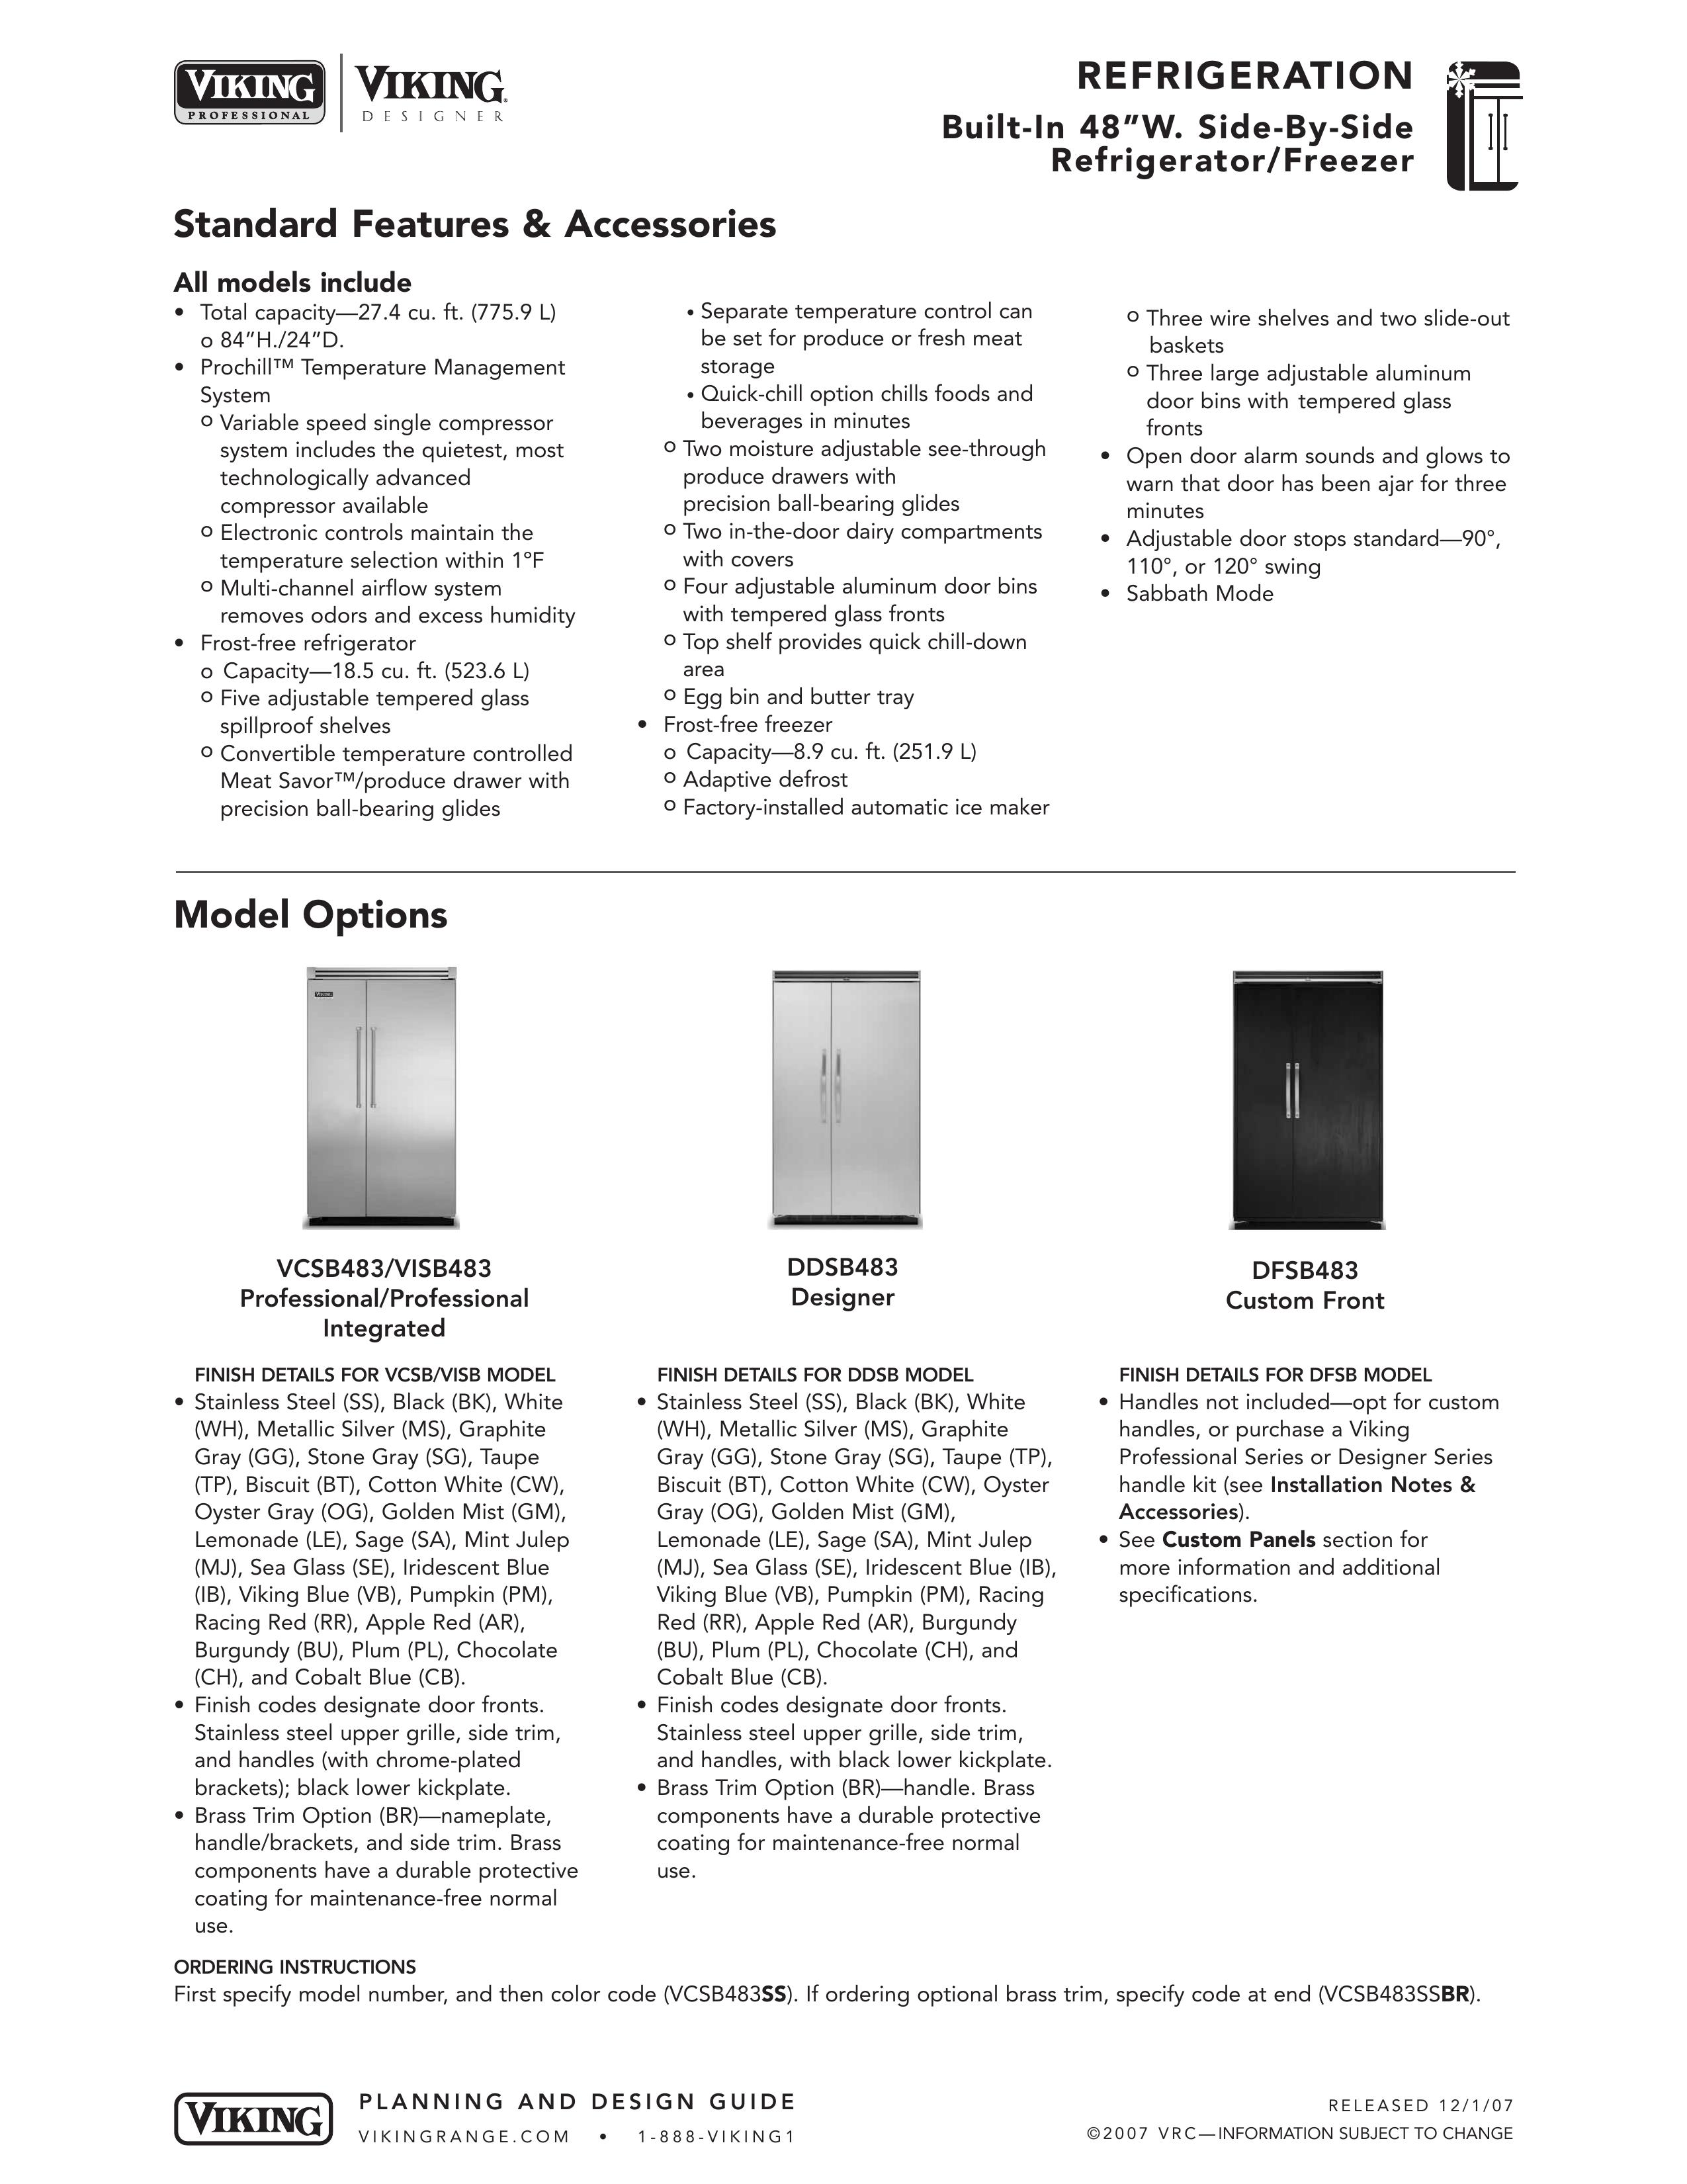 Viking DDSB483 Refrigerator User Manual